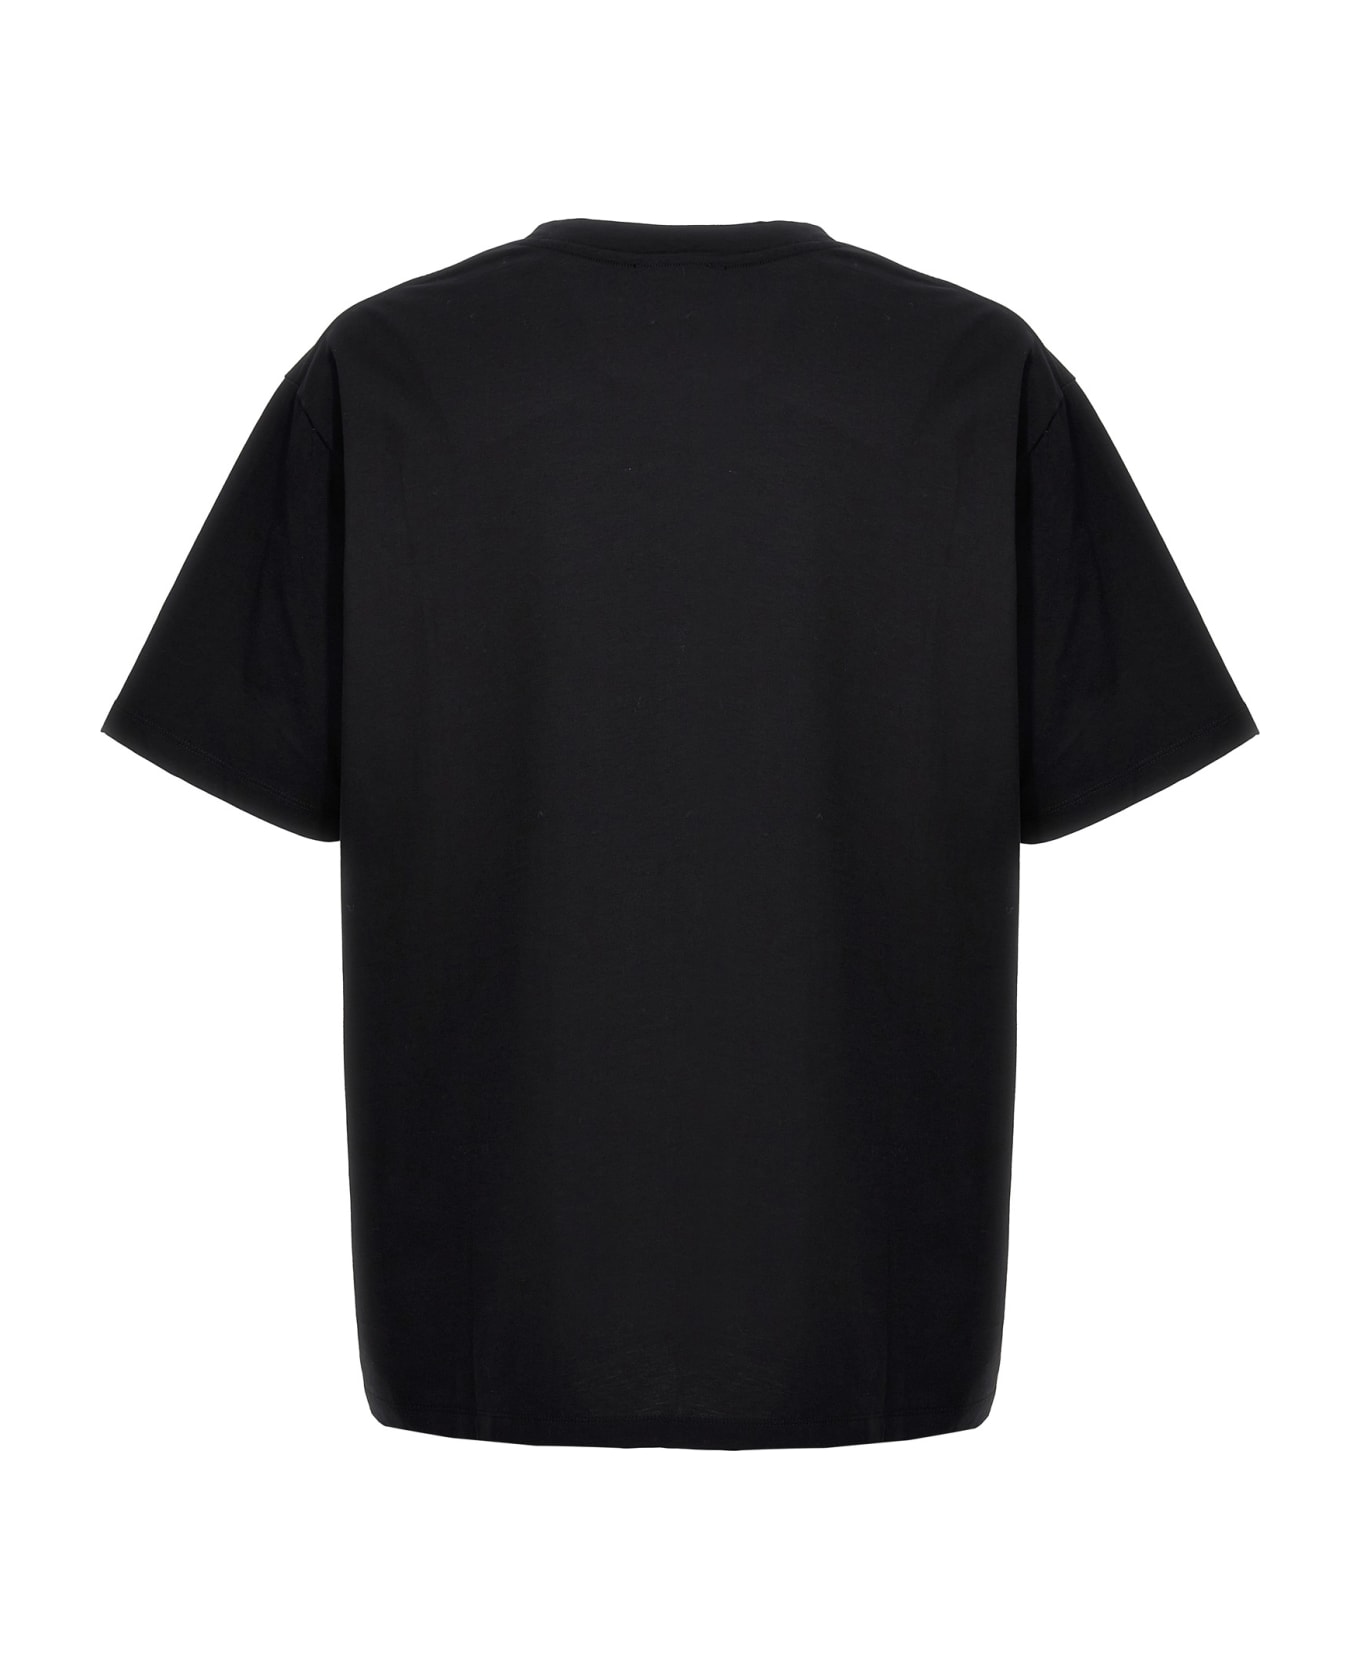 Balmain 'coin' T-shirt - Black